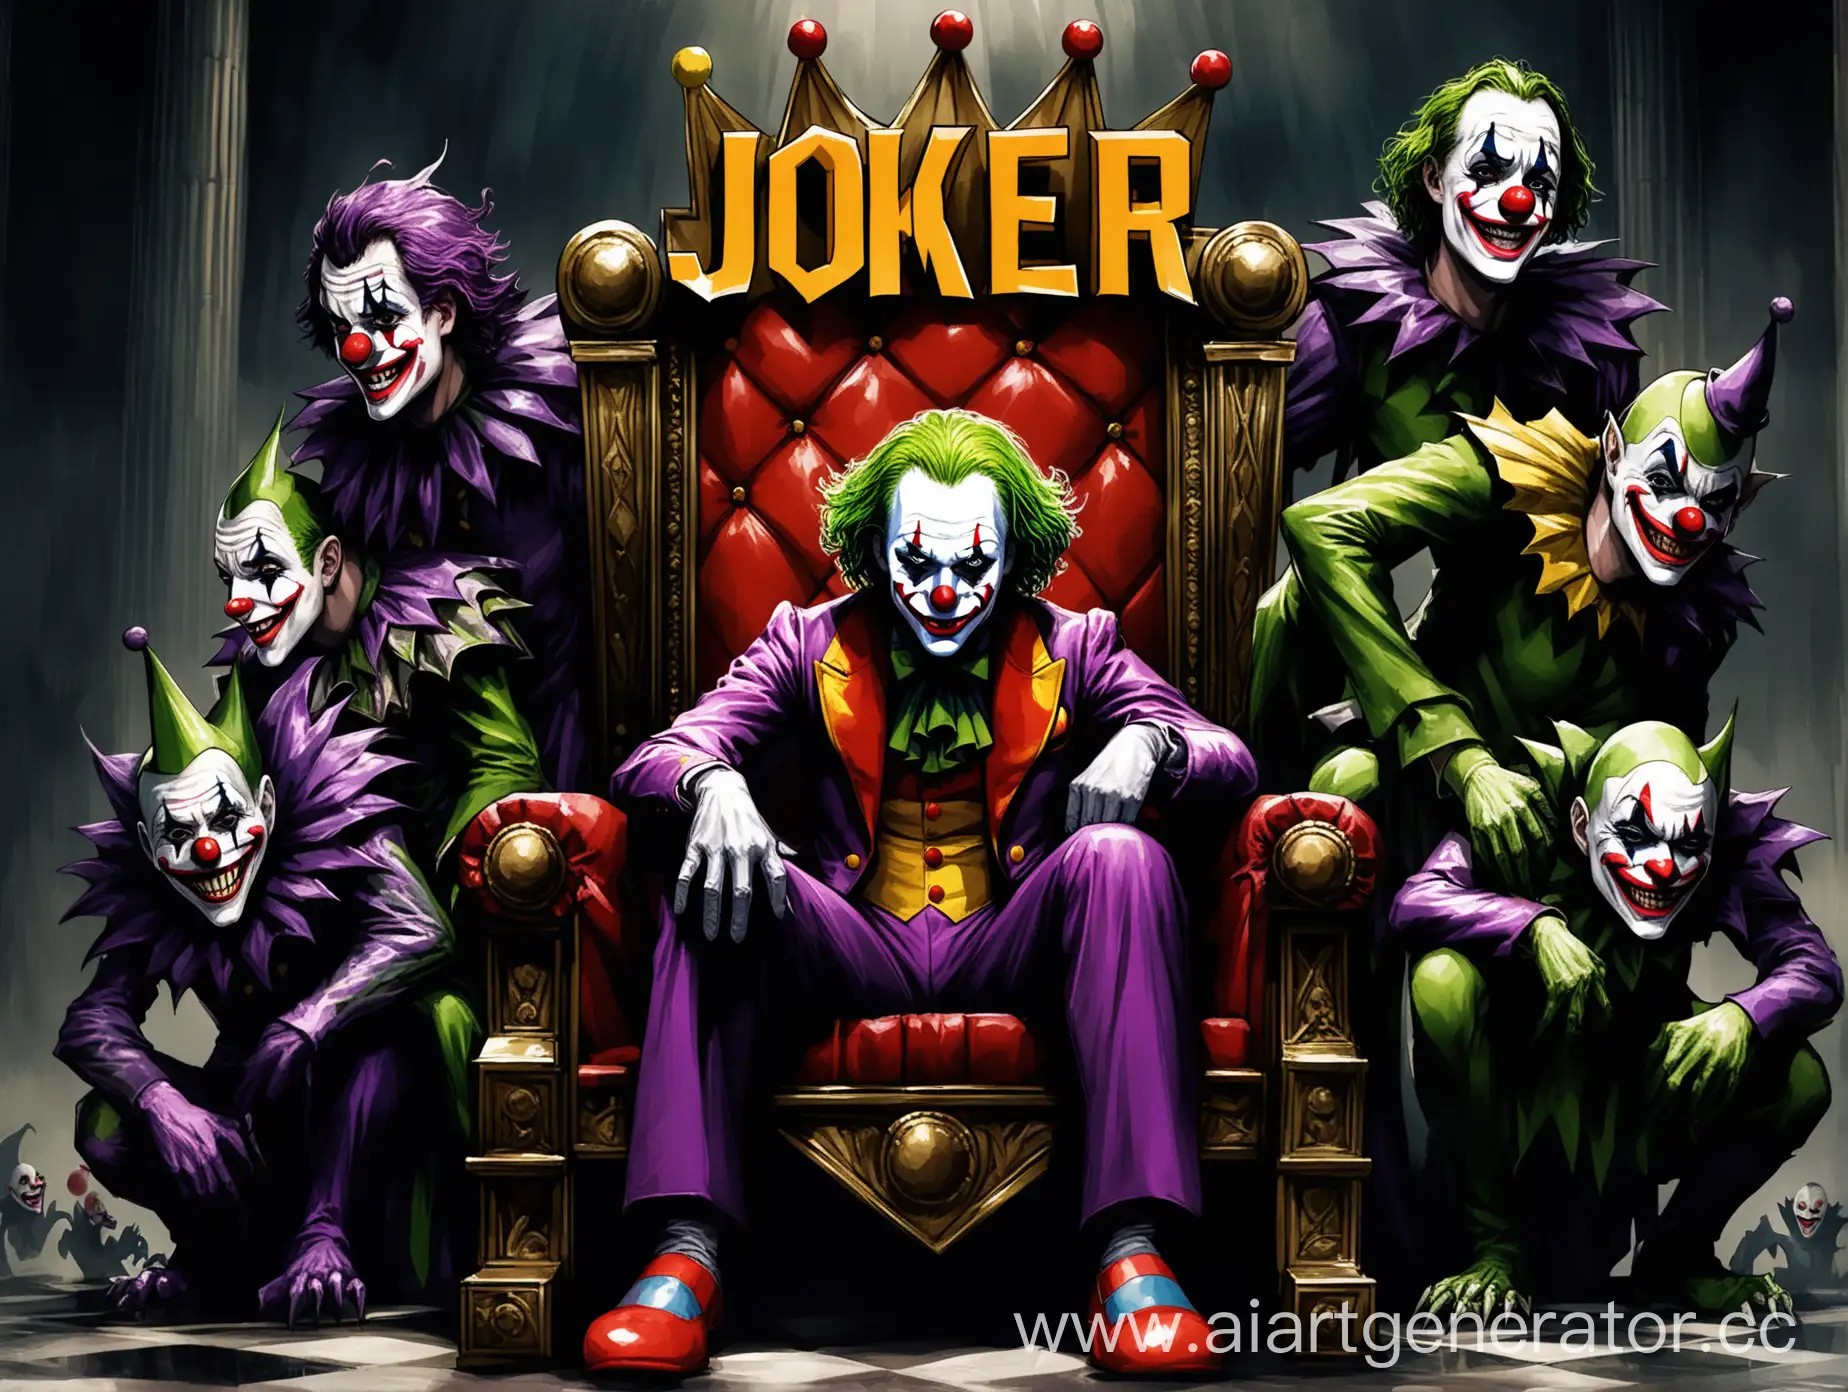 Joker-Clown-Ruling-Over-Submissive-Monsters